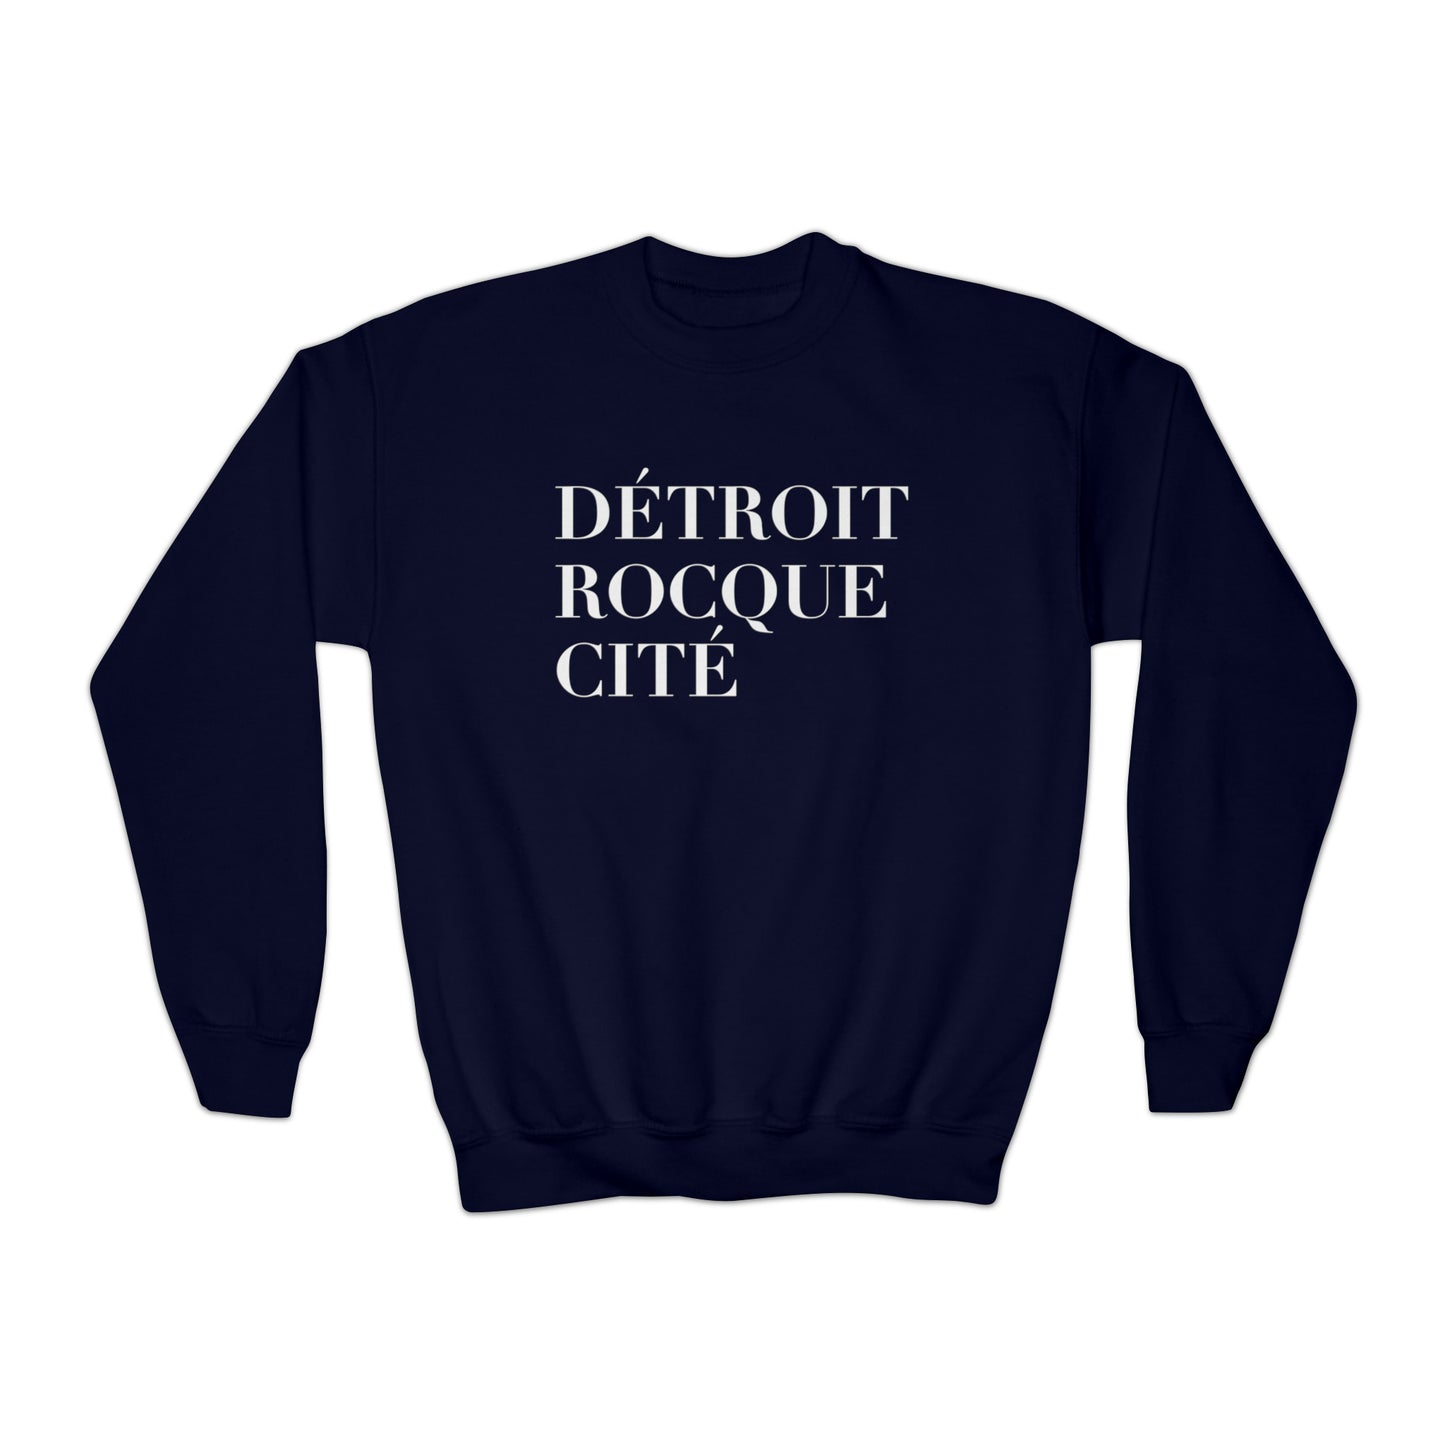 'Détroit Rocque Cité' Youth Sweatshirt